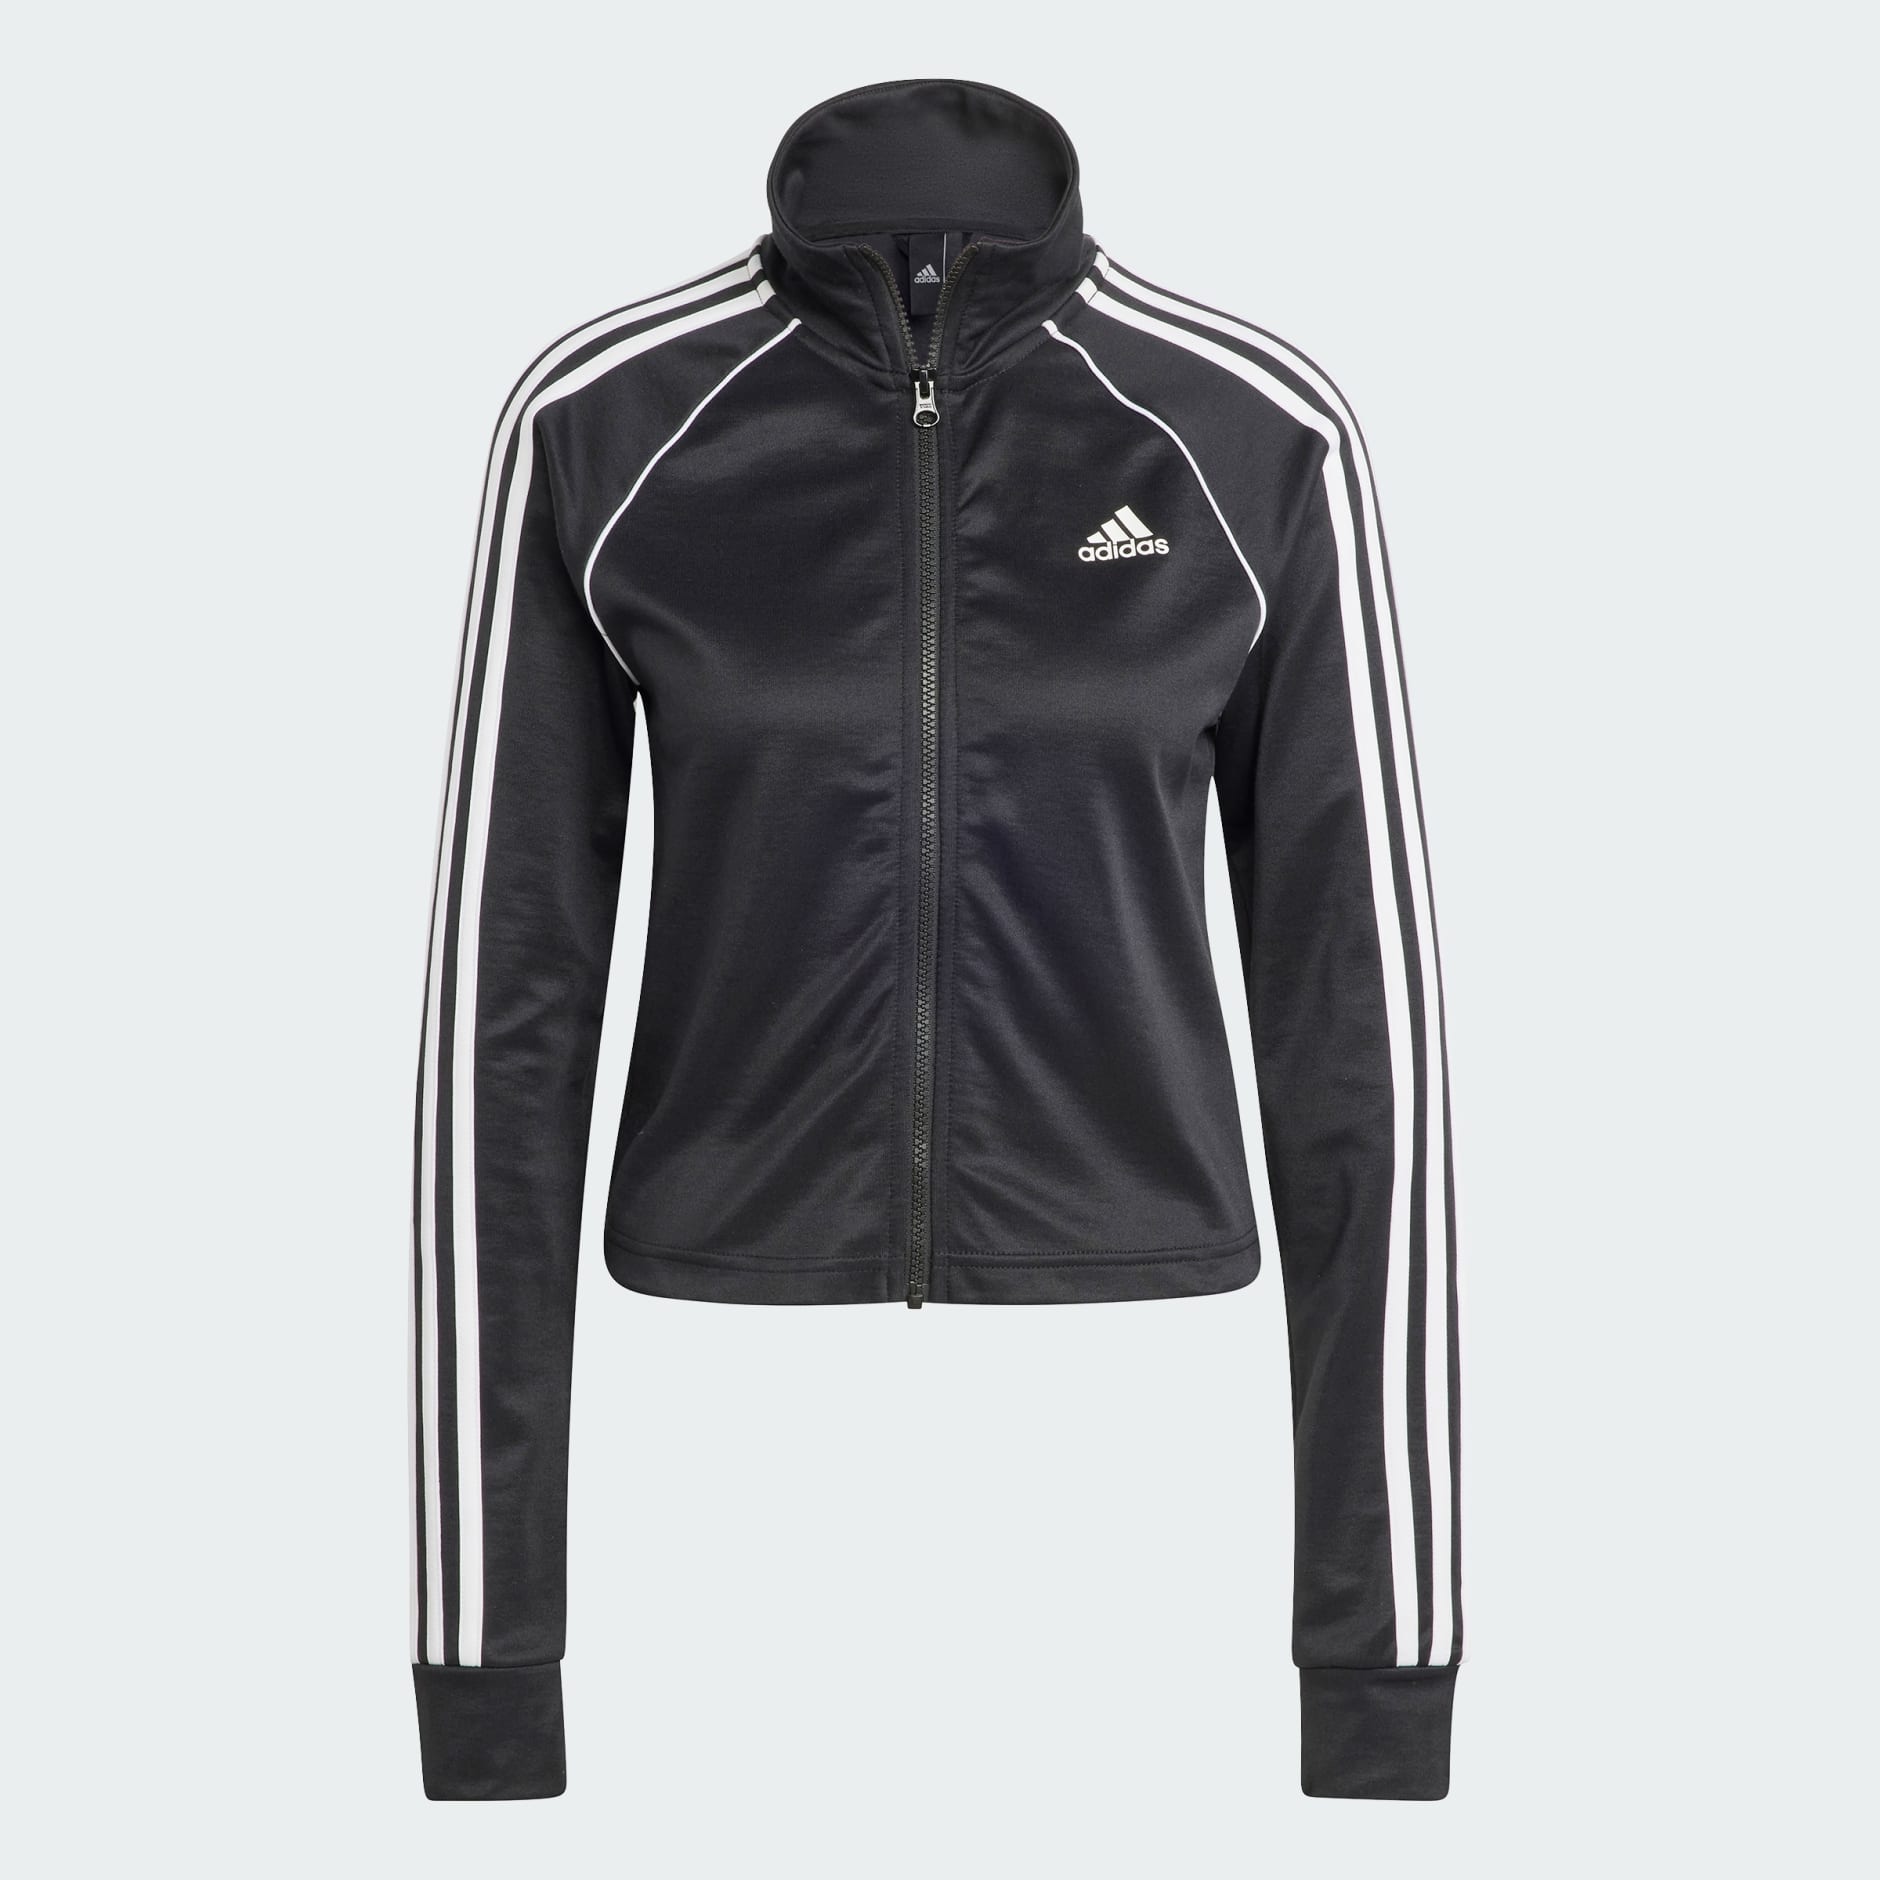 Adidas Teamsport Track Suit Black Adidas Uae 5696